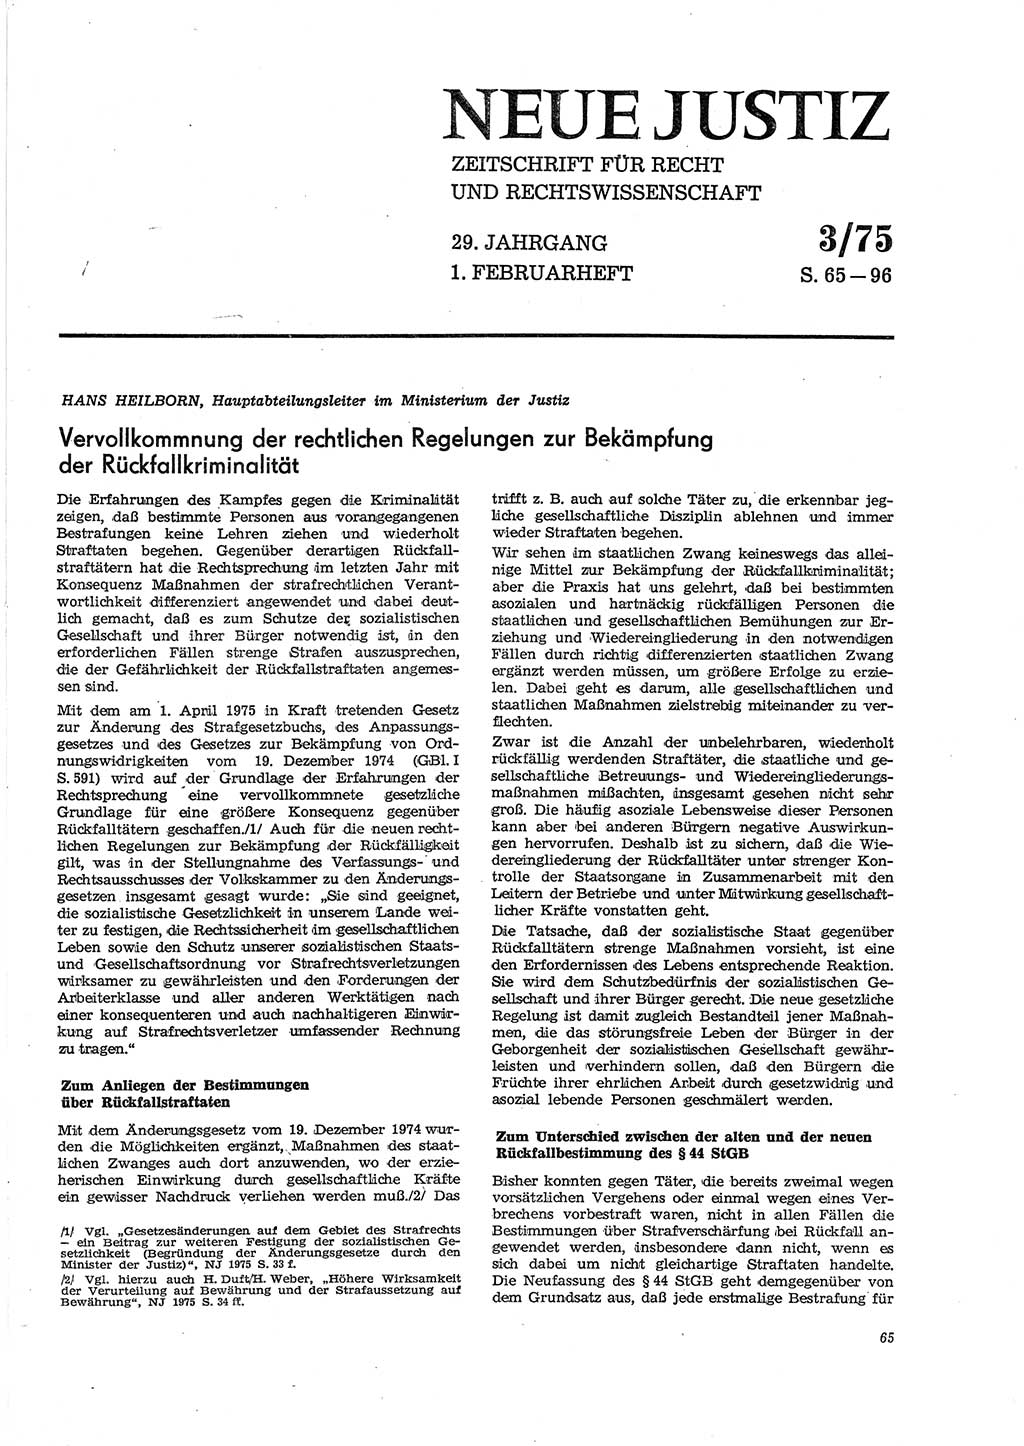 Neue Justiz (NJ), Zeitschrift für Recht und Rechtswissenschaft [Deutsche Demokratische Republik (DDR)], 29. Jahrgang 1975, Seite 65 (NJ DDR 1975, S. 65)